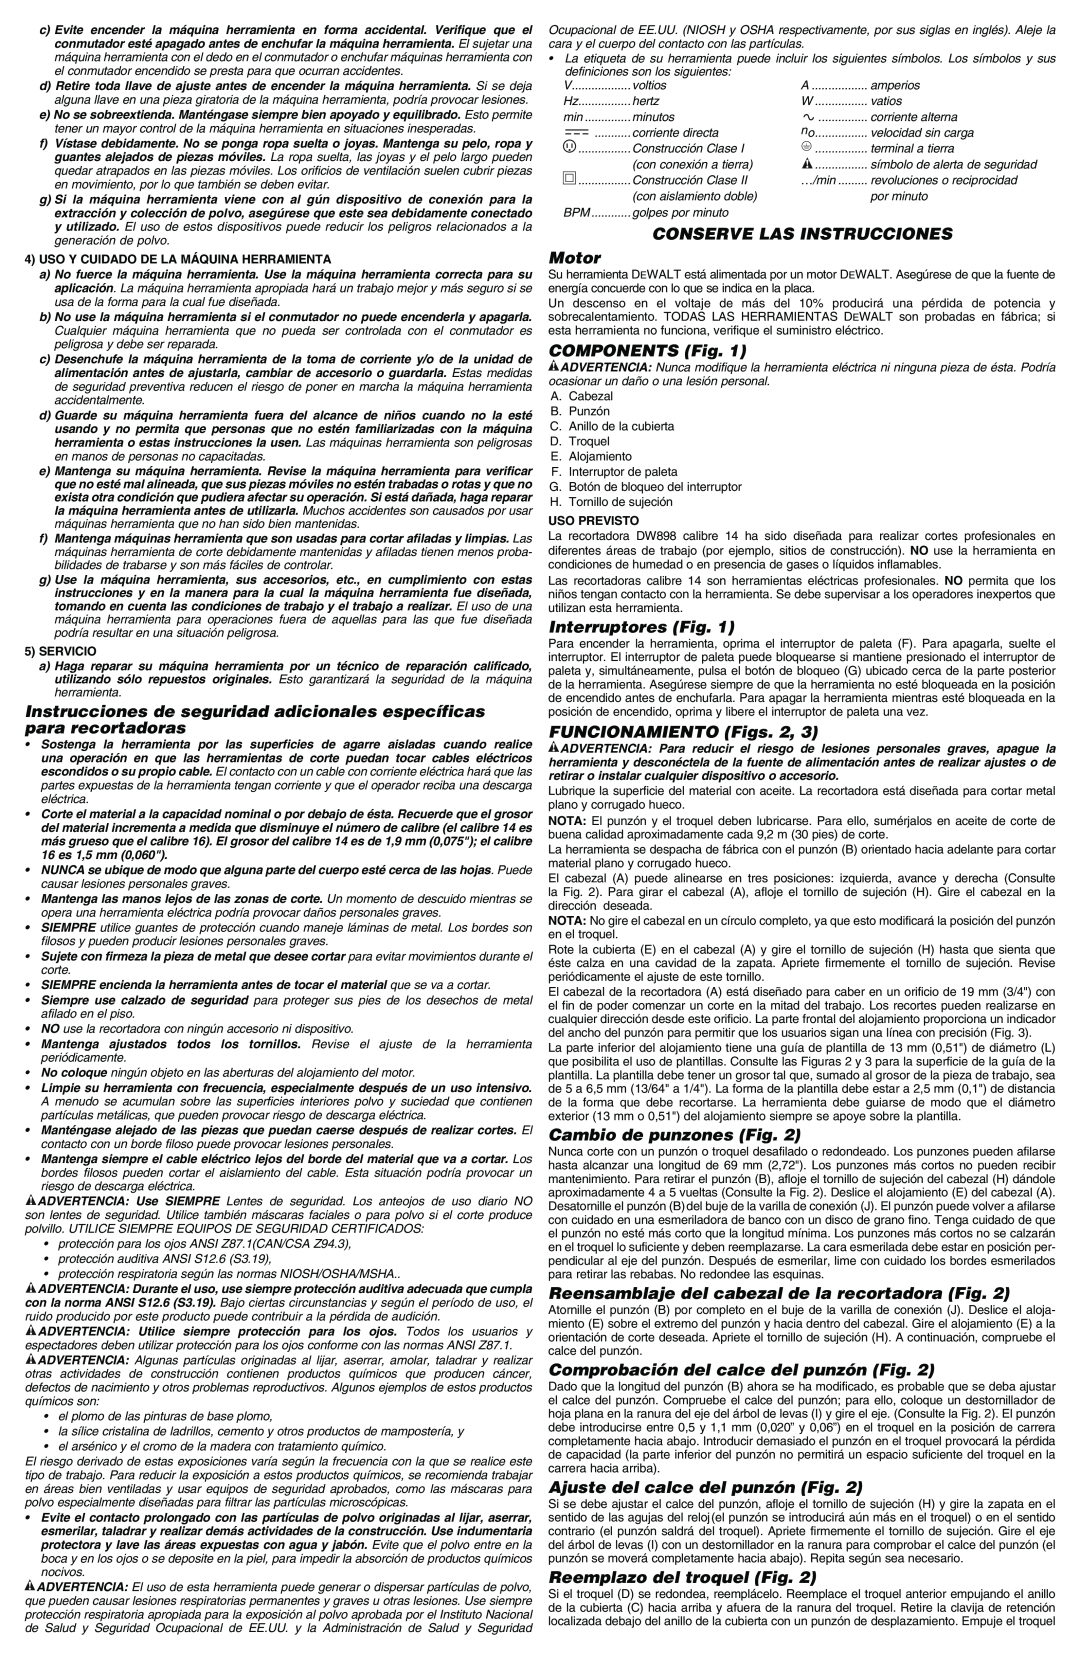 DeWalt DW898 instruction manual Uso Y Cuidado De La Máquina Herramienta, Servicio, Uso Previsto 